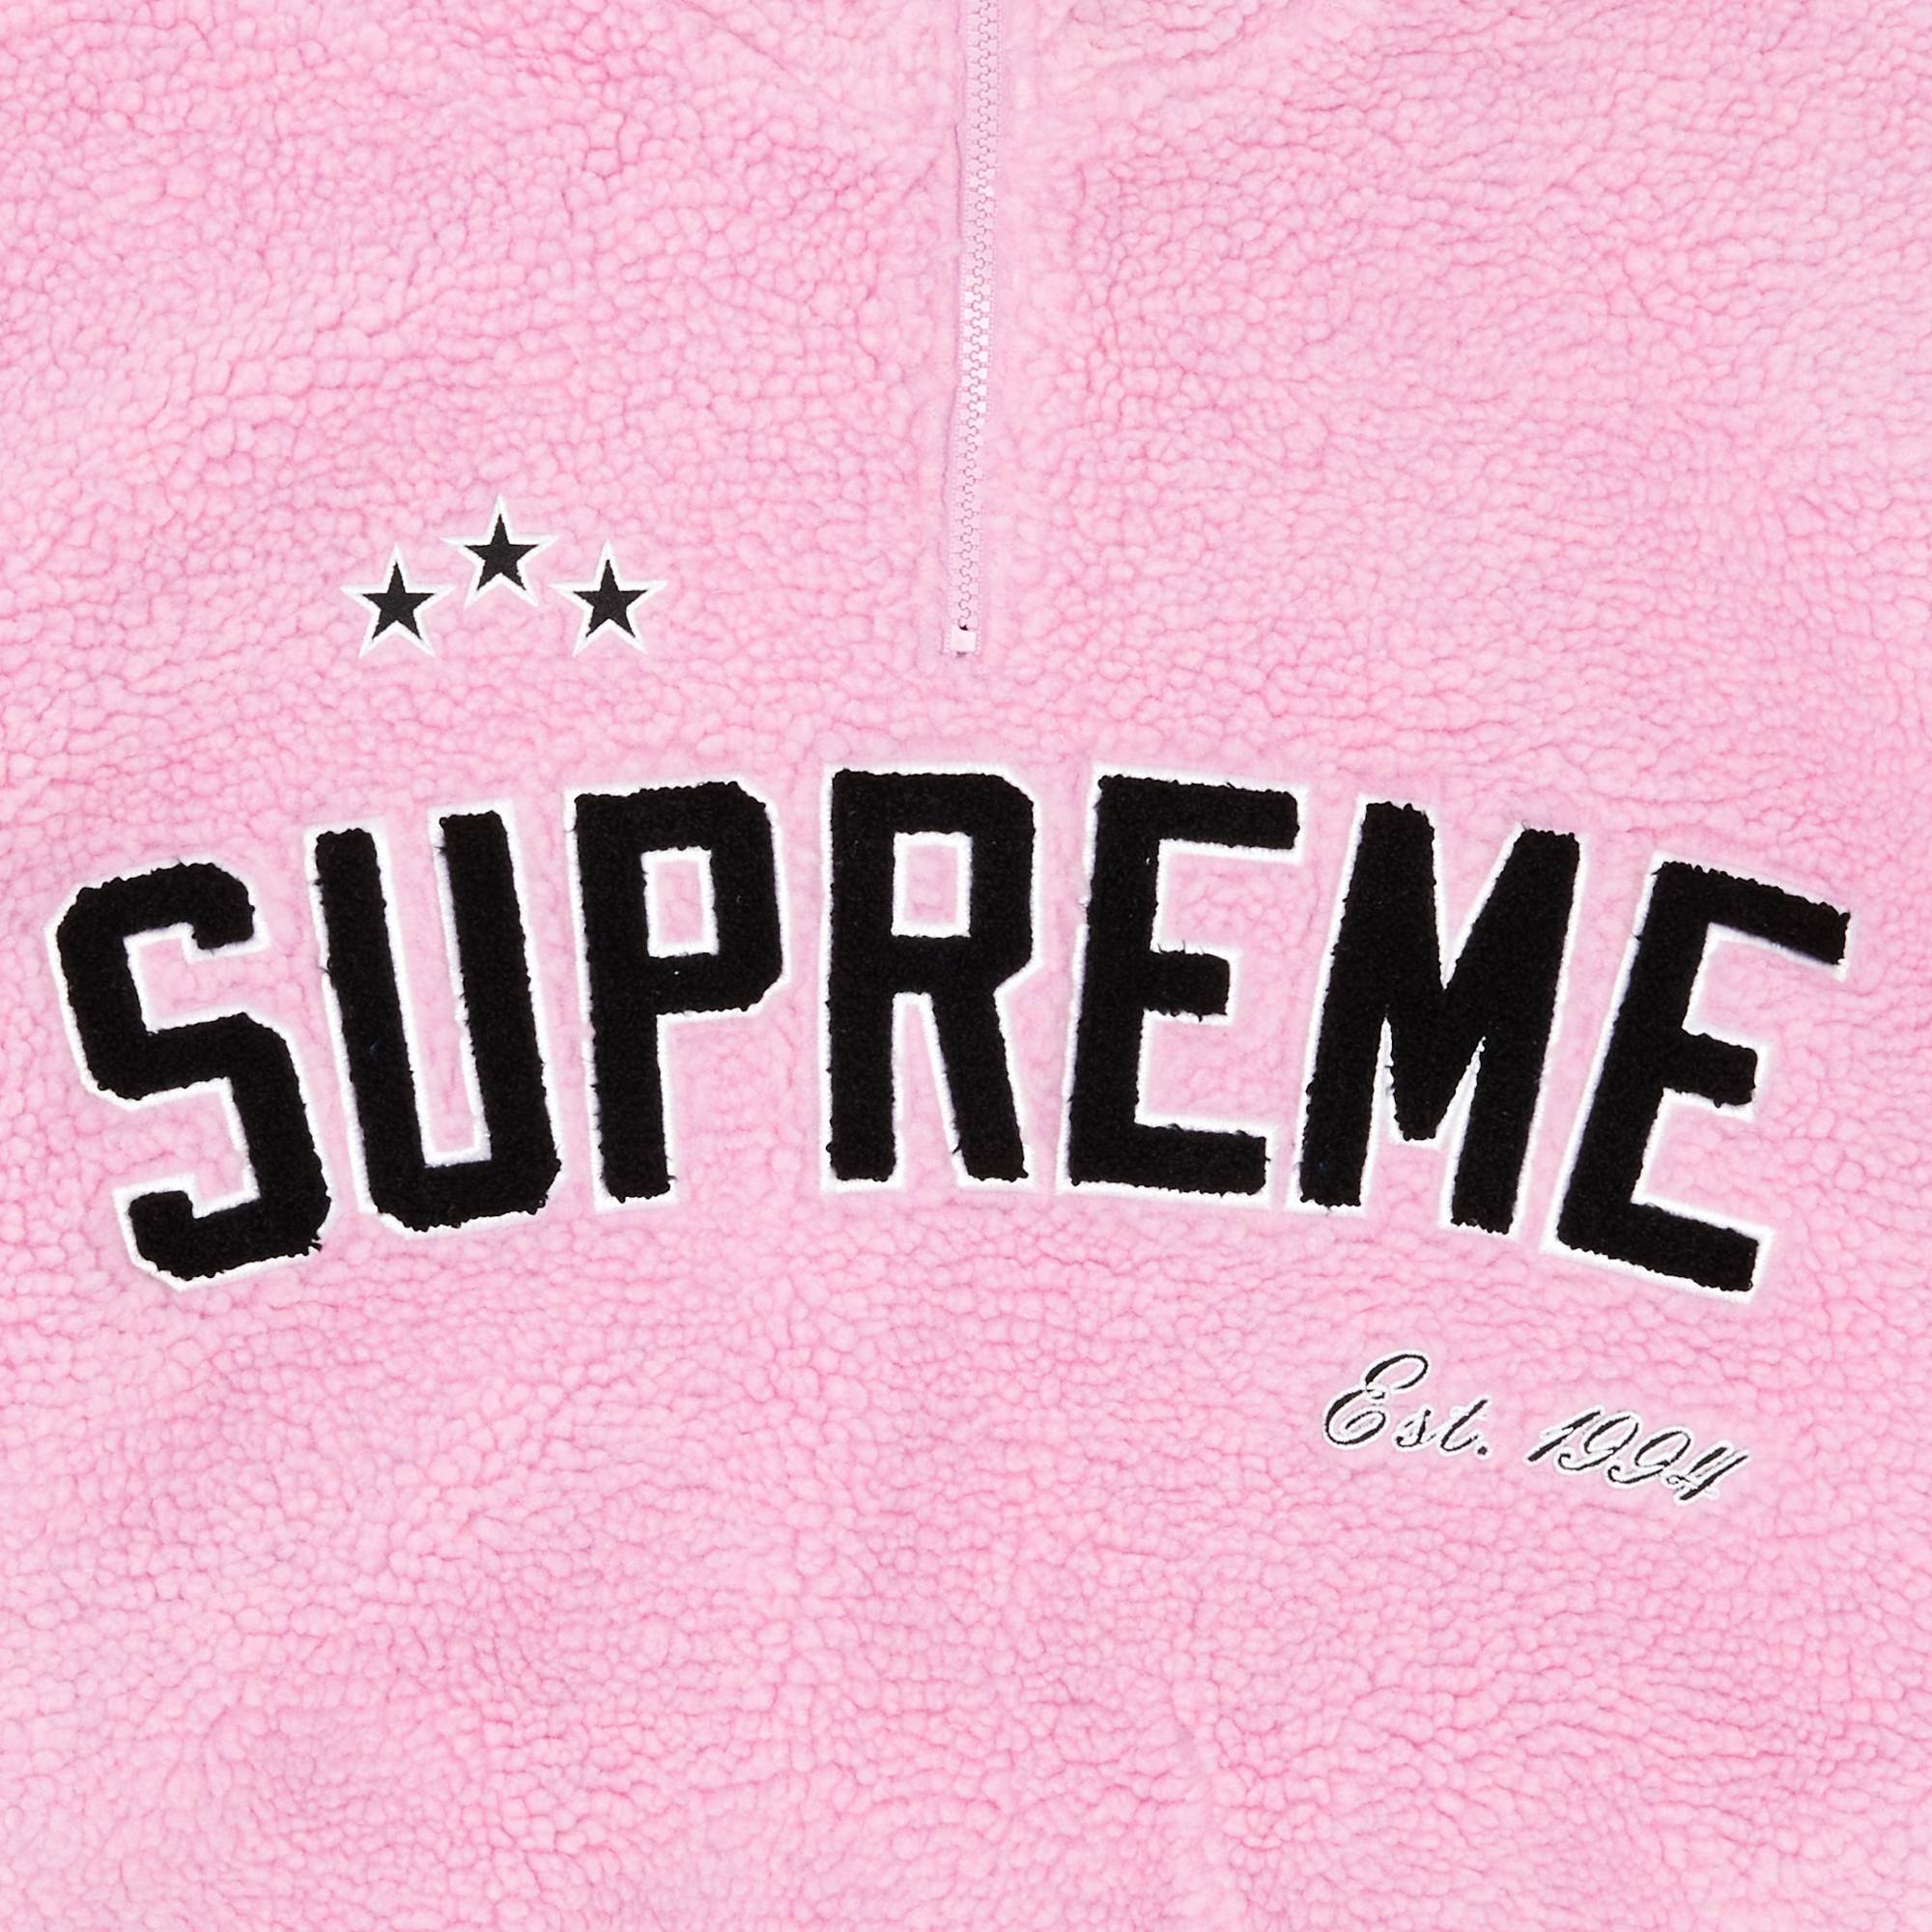 Supreme Arc Half Zip Fleece Pullover 'Pink'